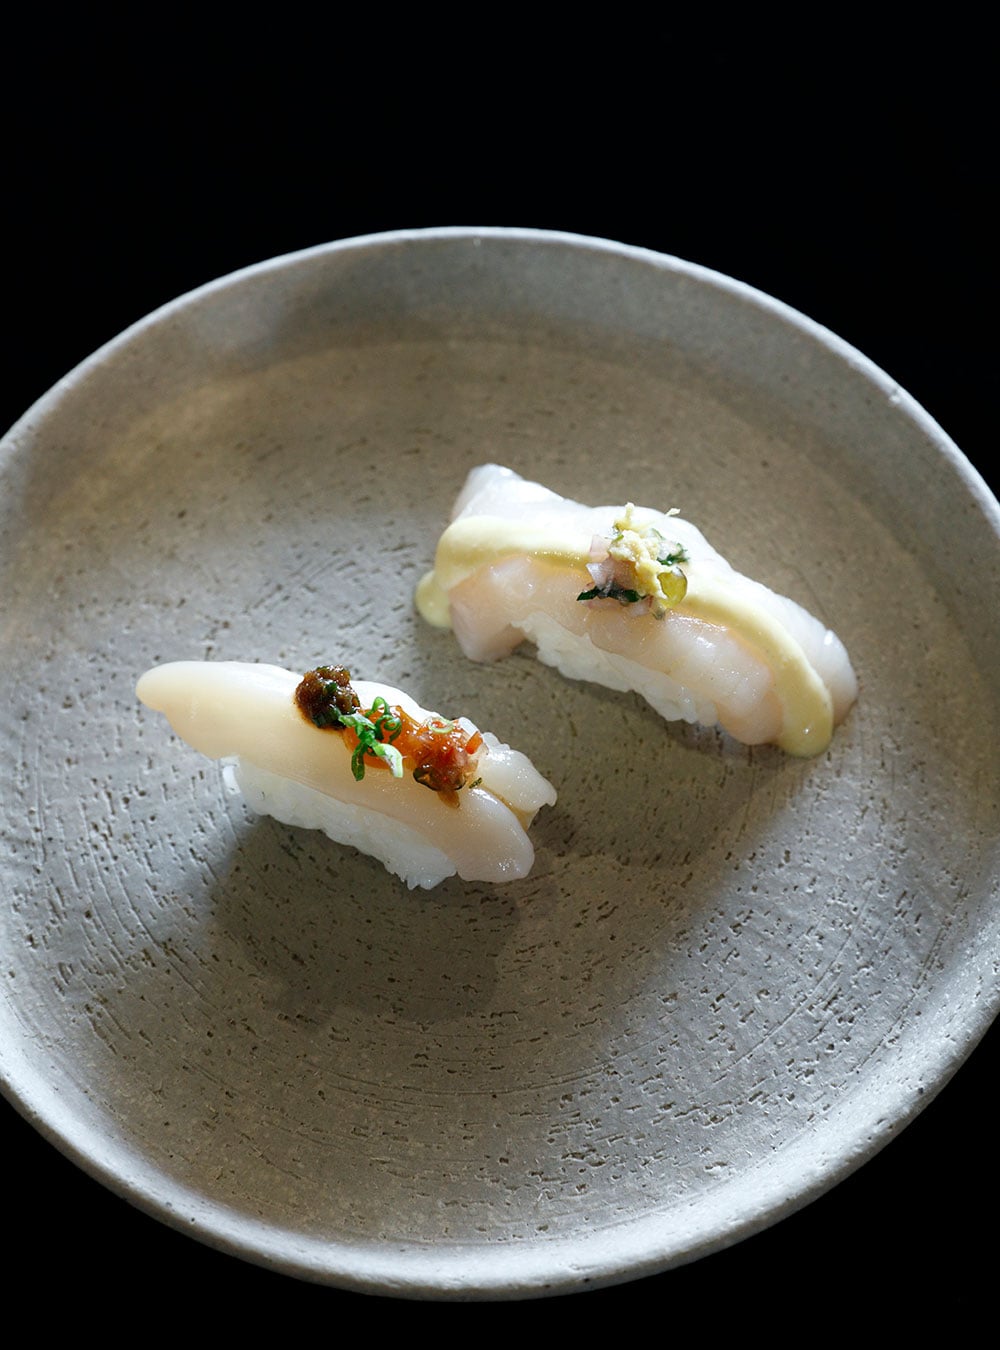 ブラックチリとマカのソースで、魚介の旨みをペルースタイルで引き出した「ニギリ」。こんなお寿司、初めて！とその美味しさに感激。Photo：Atsushi Hashimoto